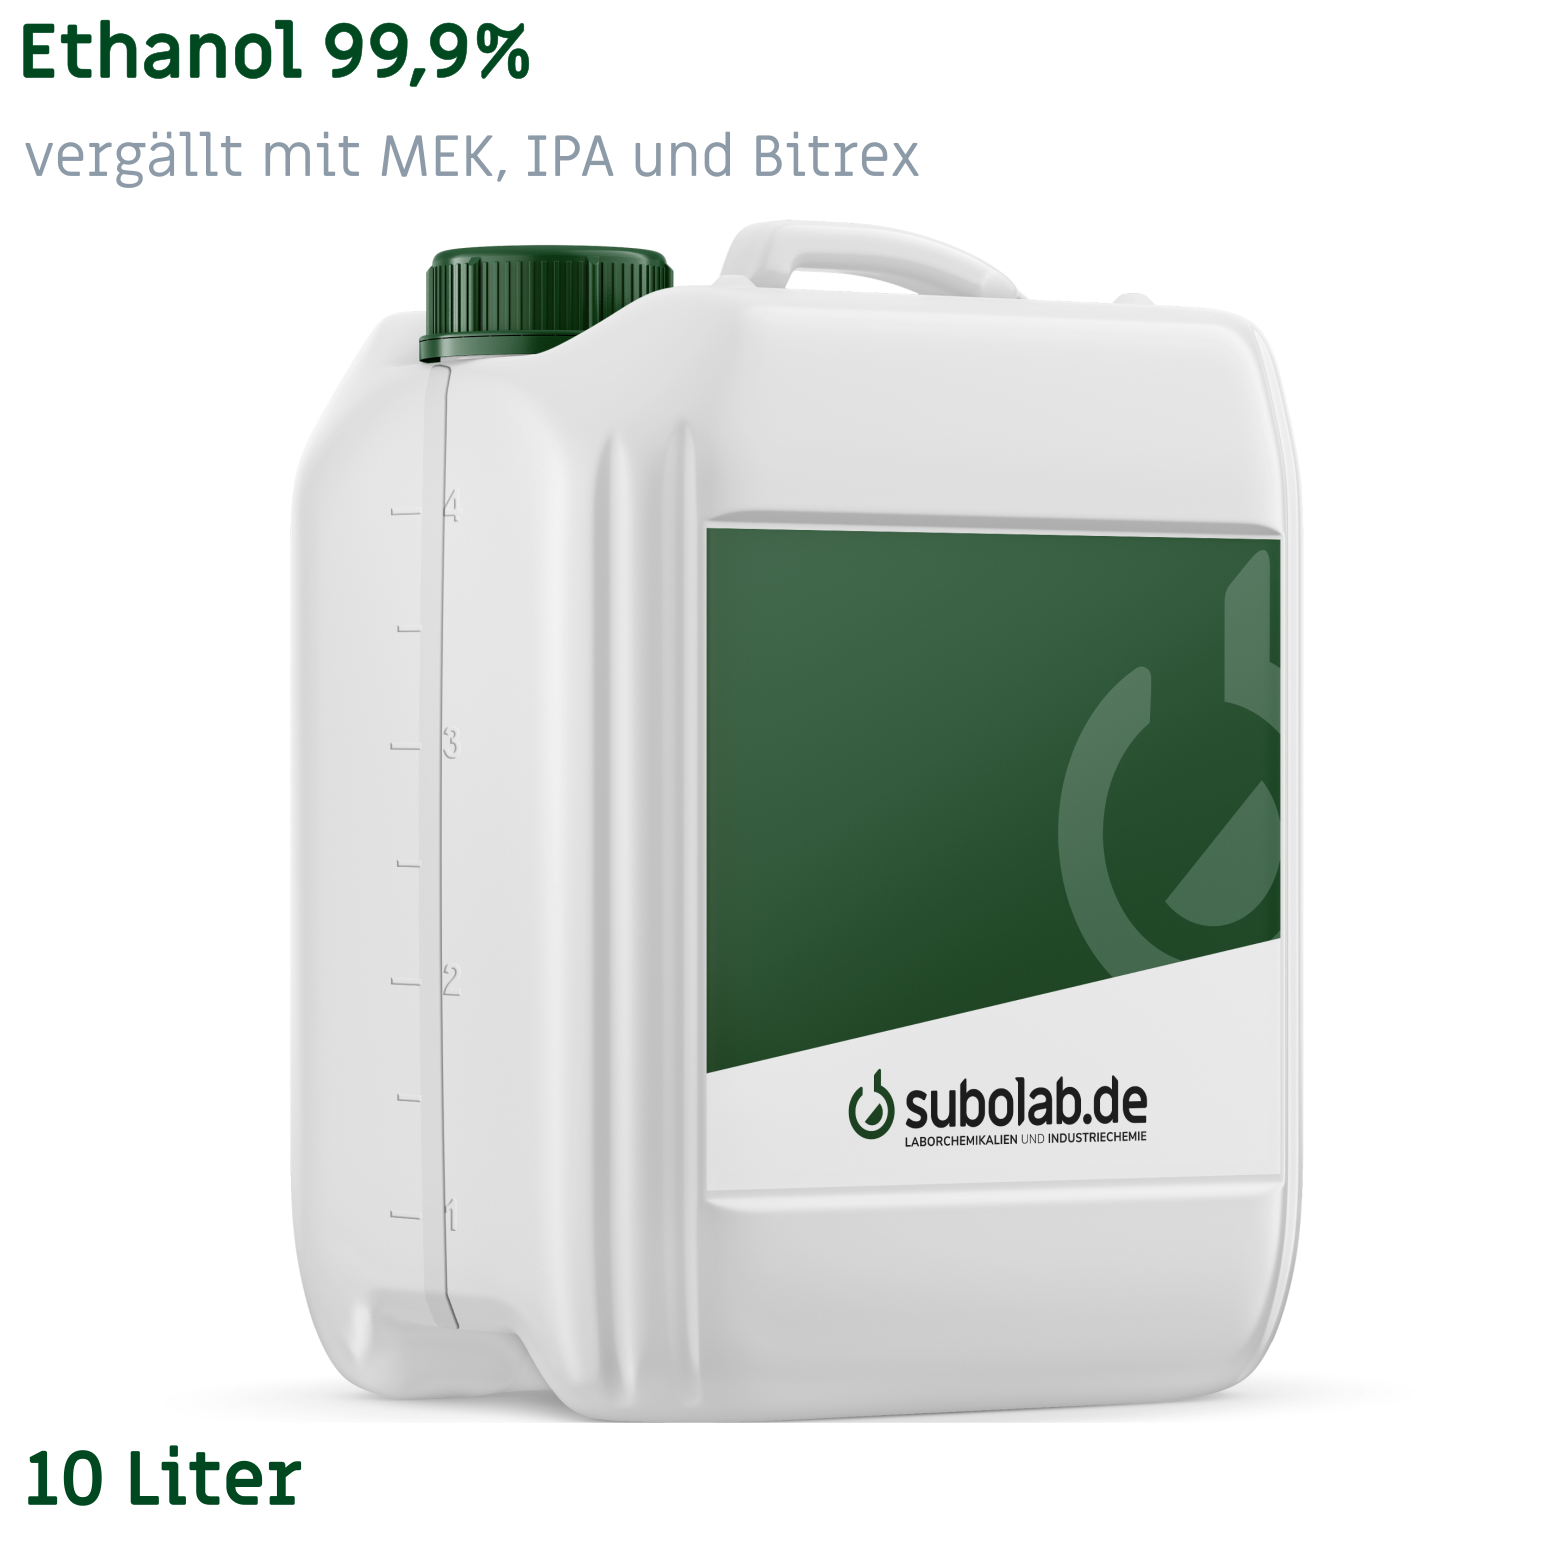 Bild von Ethanol 99,9% vergällt mit MEK, IPA und Bitrex (10 Liter)